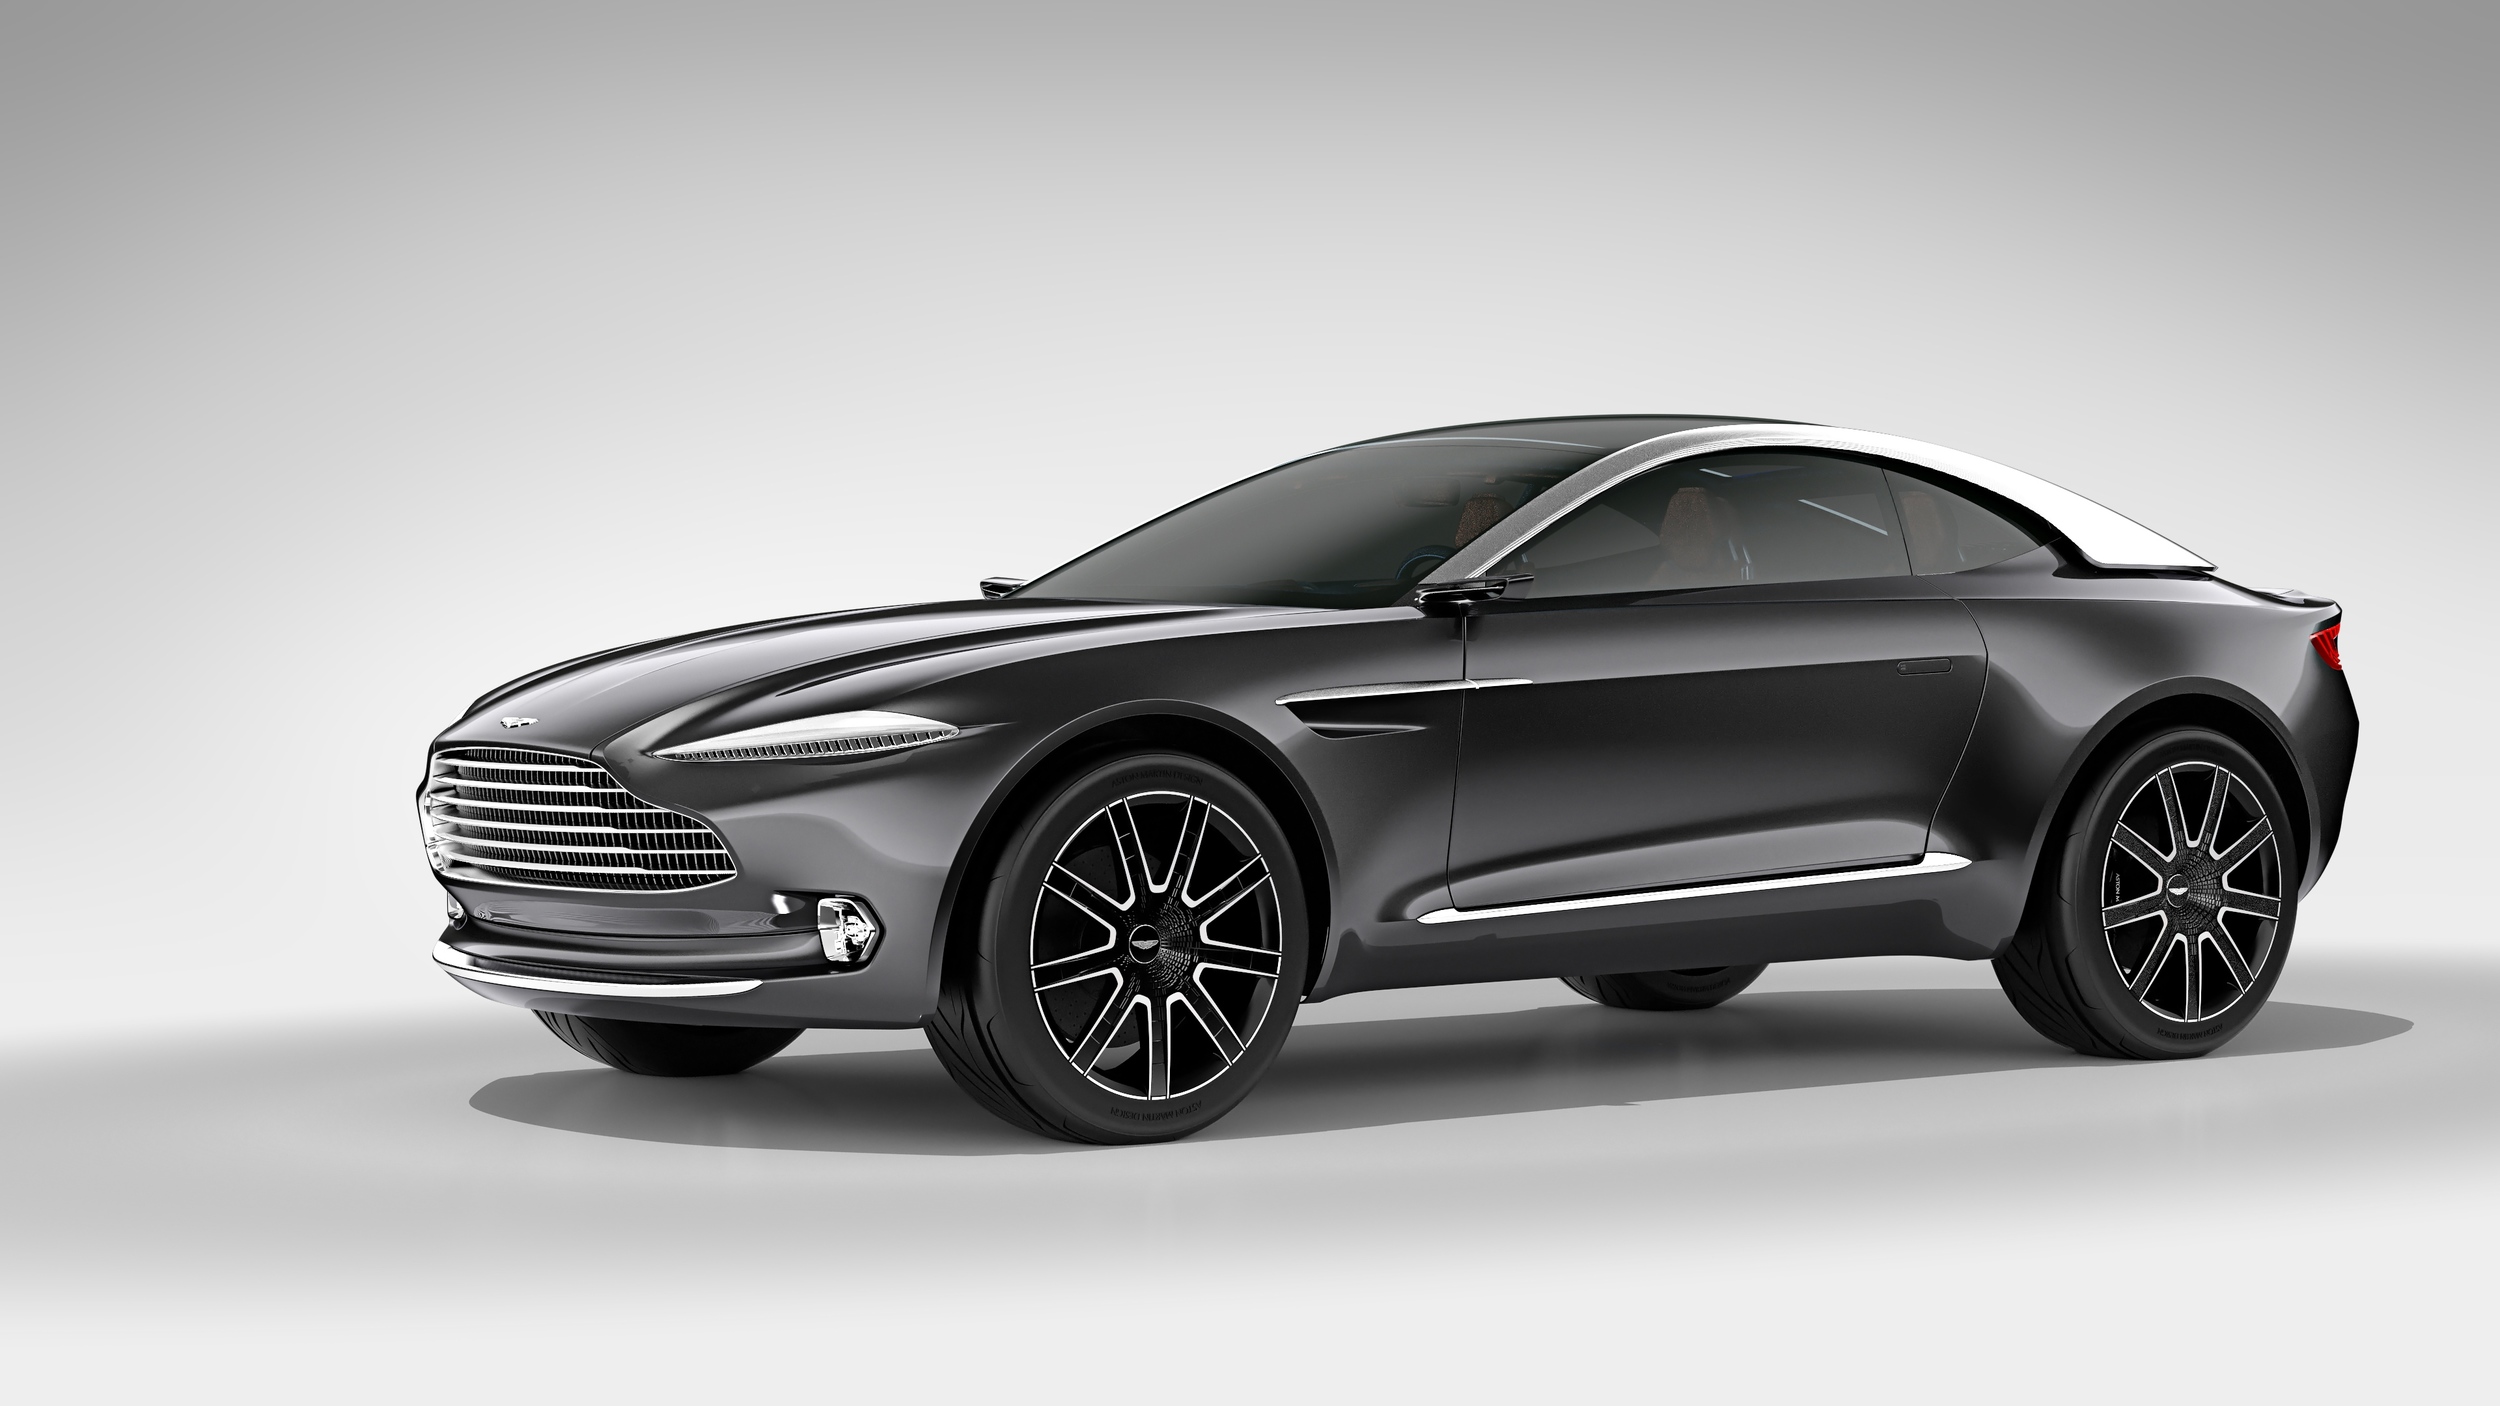 Aston Martin DBX Concept, 2015